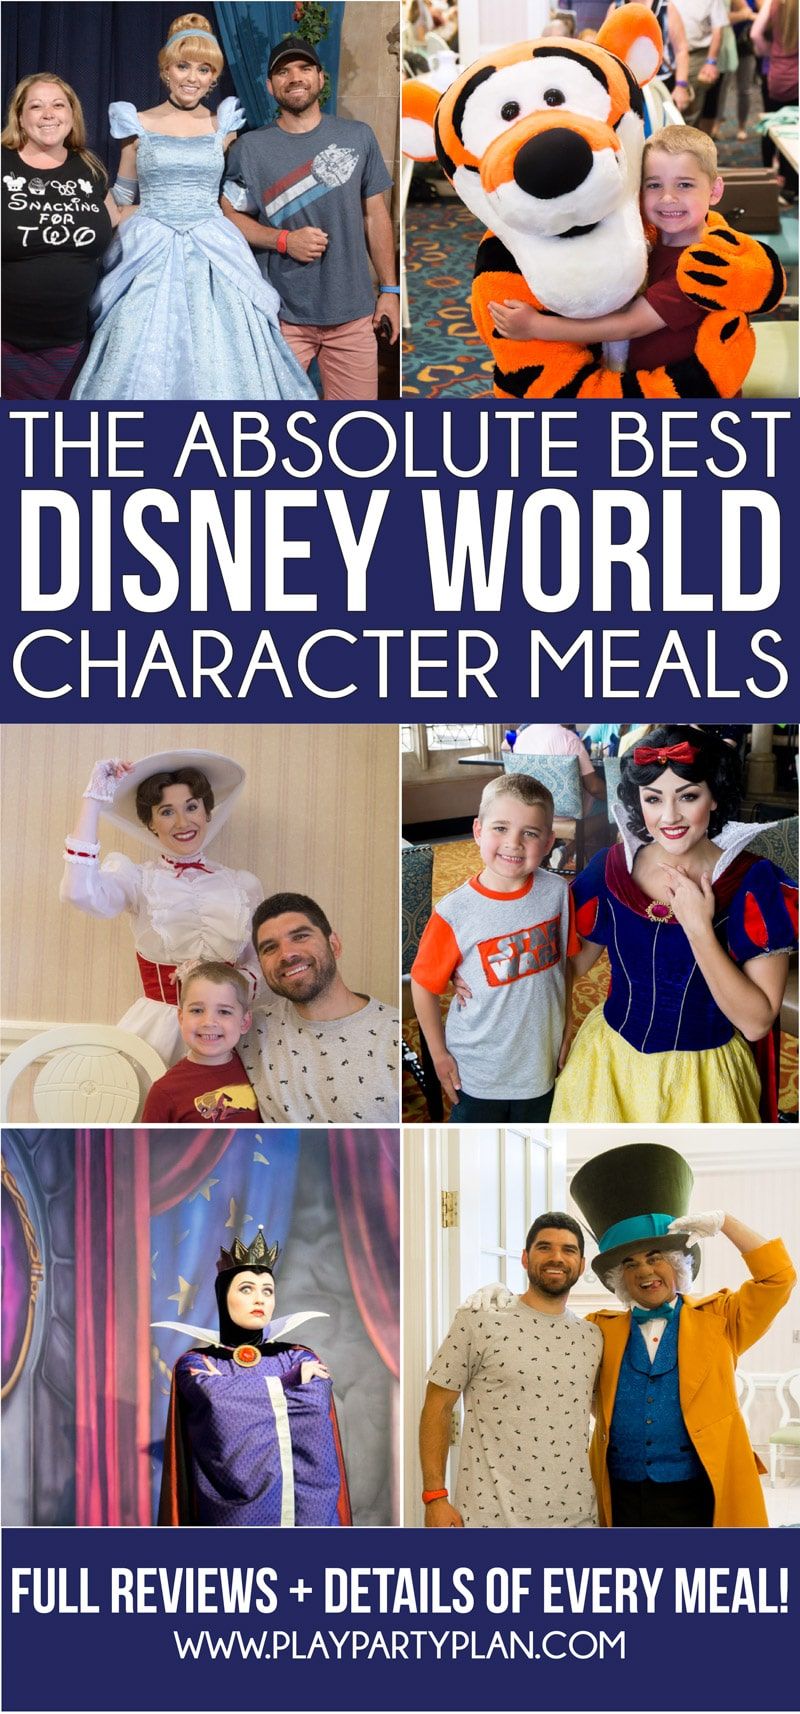 Disney Worldi tegelaskujude ülim juhend uuendatud 2019. aastaks! Nimekiri parimatest kohtadest hommikusöögi saamiseks, kus kuurortides on iseloomulikud toidud, parimad peredele ja palju muud! Ja üksikud ülevaated iga Disney tegelaskuju kohta!